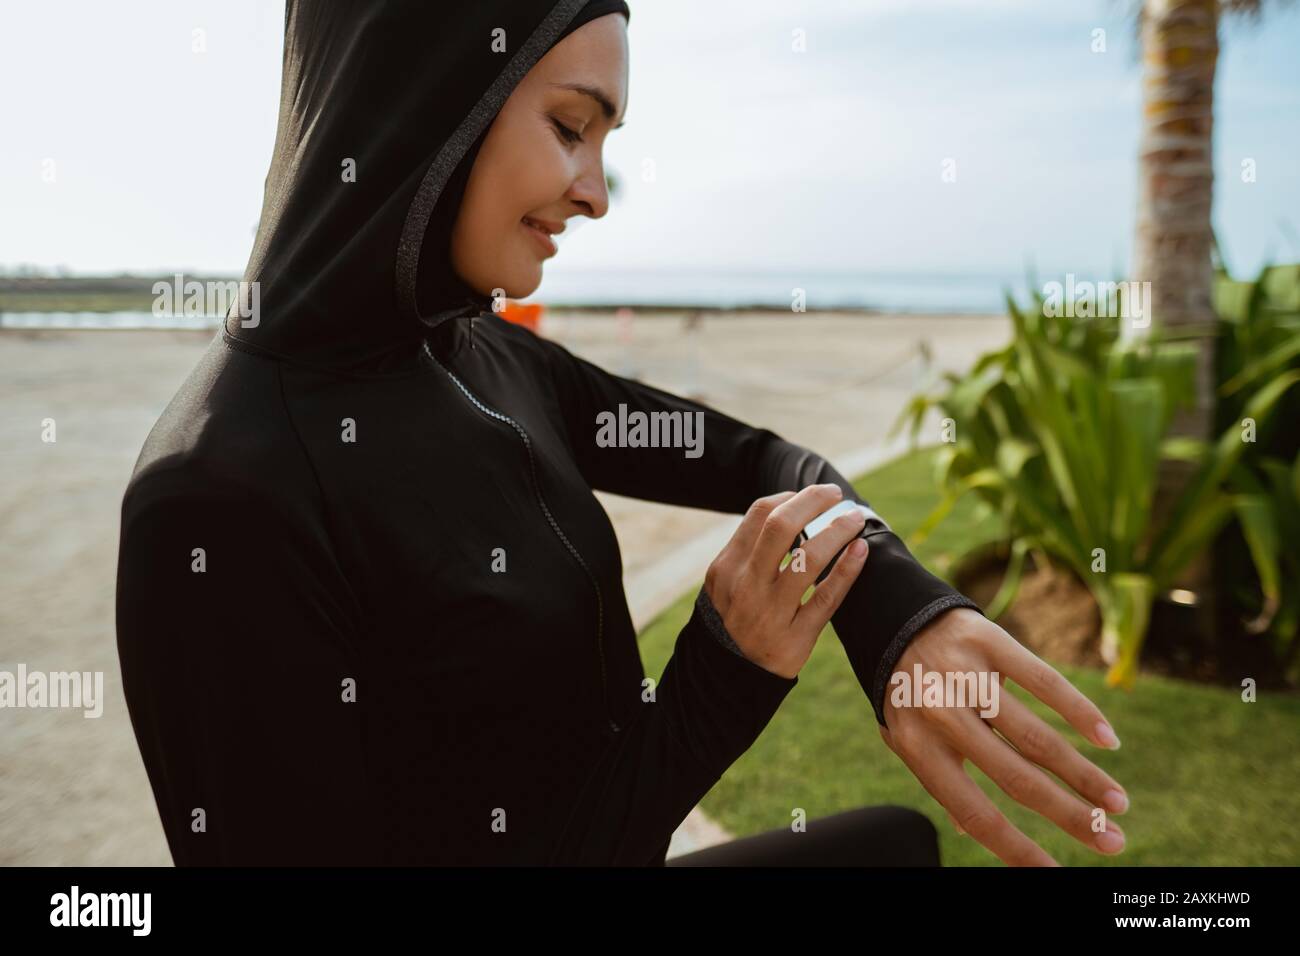 Junge muslimische Frau mit Schal, die eine elegante Uhr vor dem Joggen  aufsetzt Stockfotografie - Alamy